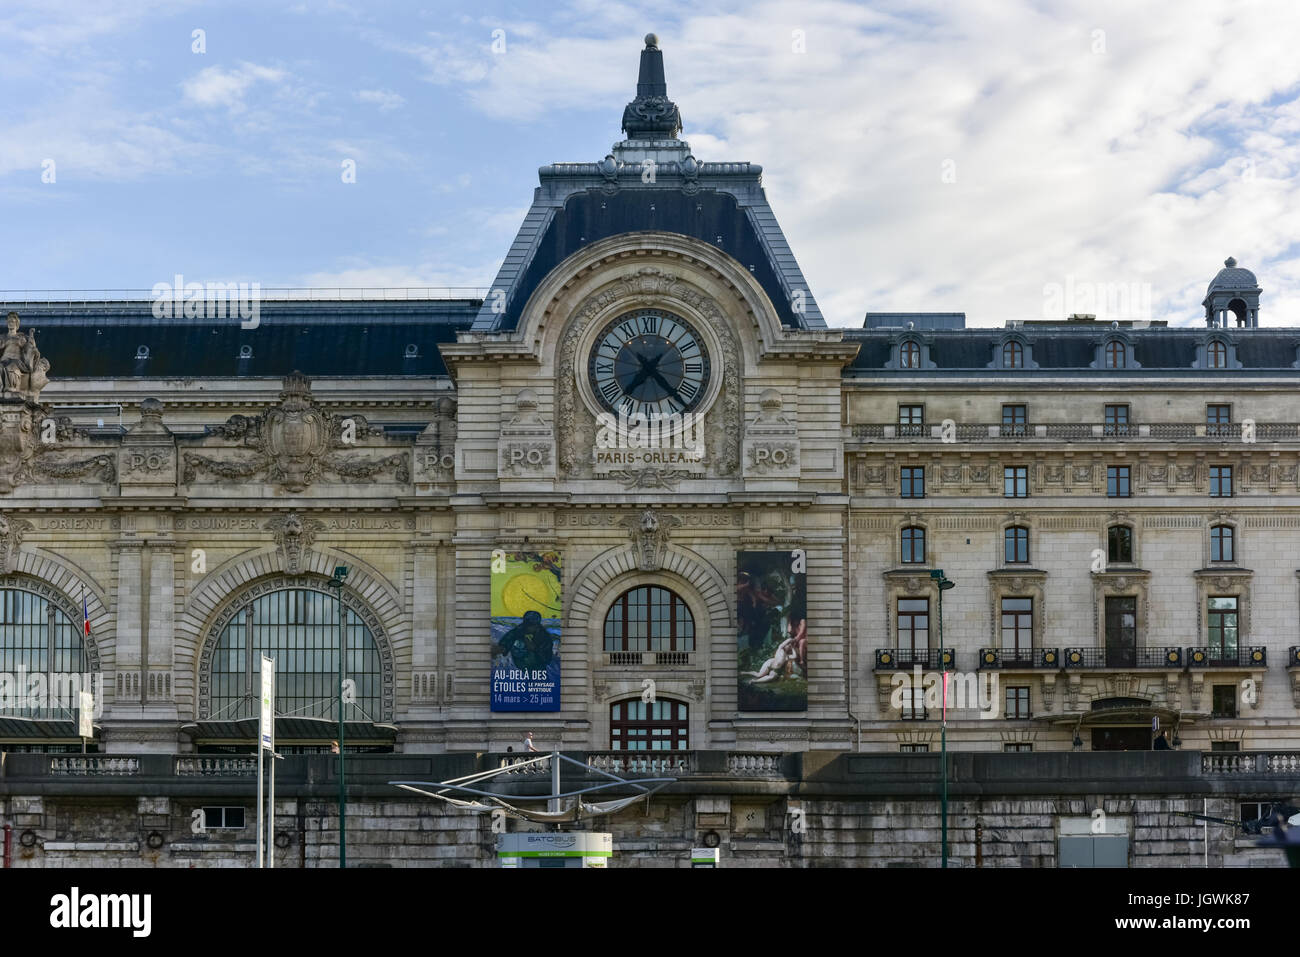 Vue sur l'horloge murale au Musée d'Orsay. D'Orsay - un musée sur la rive gauche de la Seine, c'est abrité dans l'ancienne gare d'Orsay à Paris, France. Banque D'Images